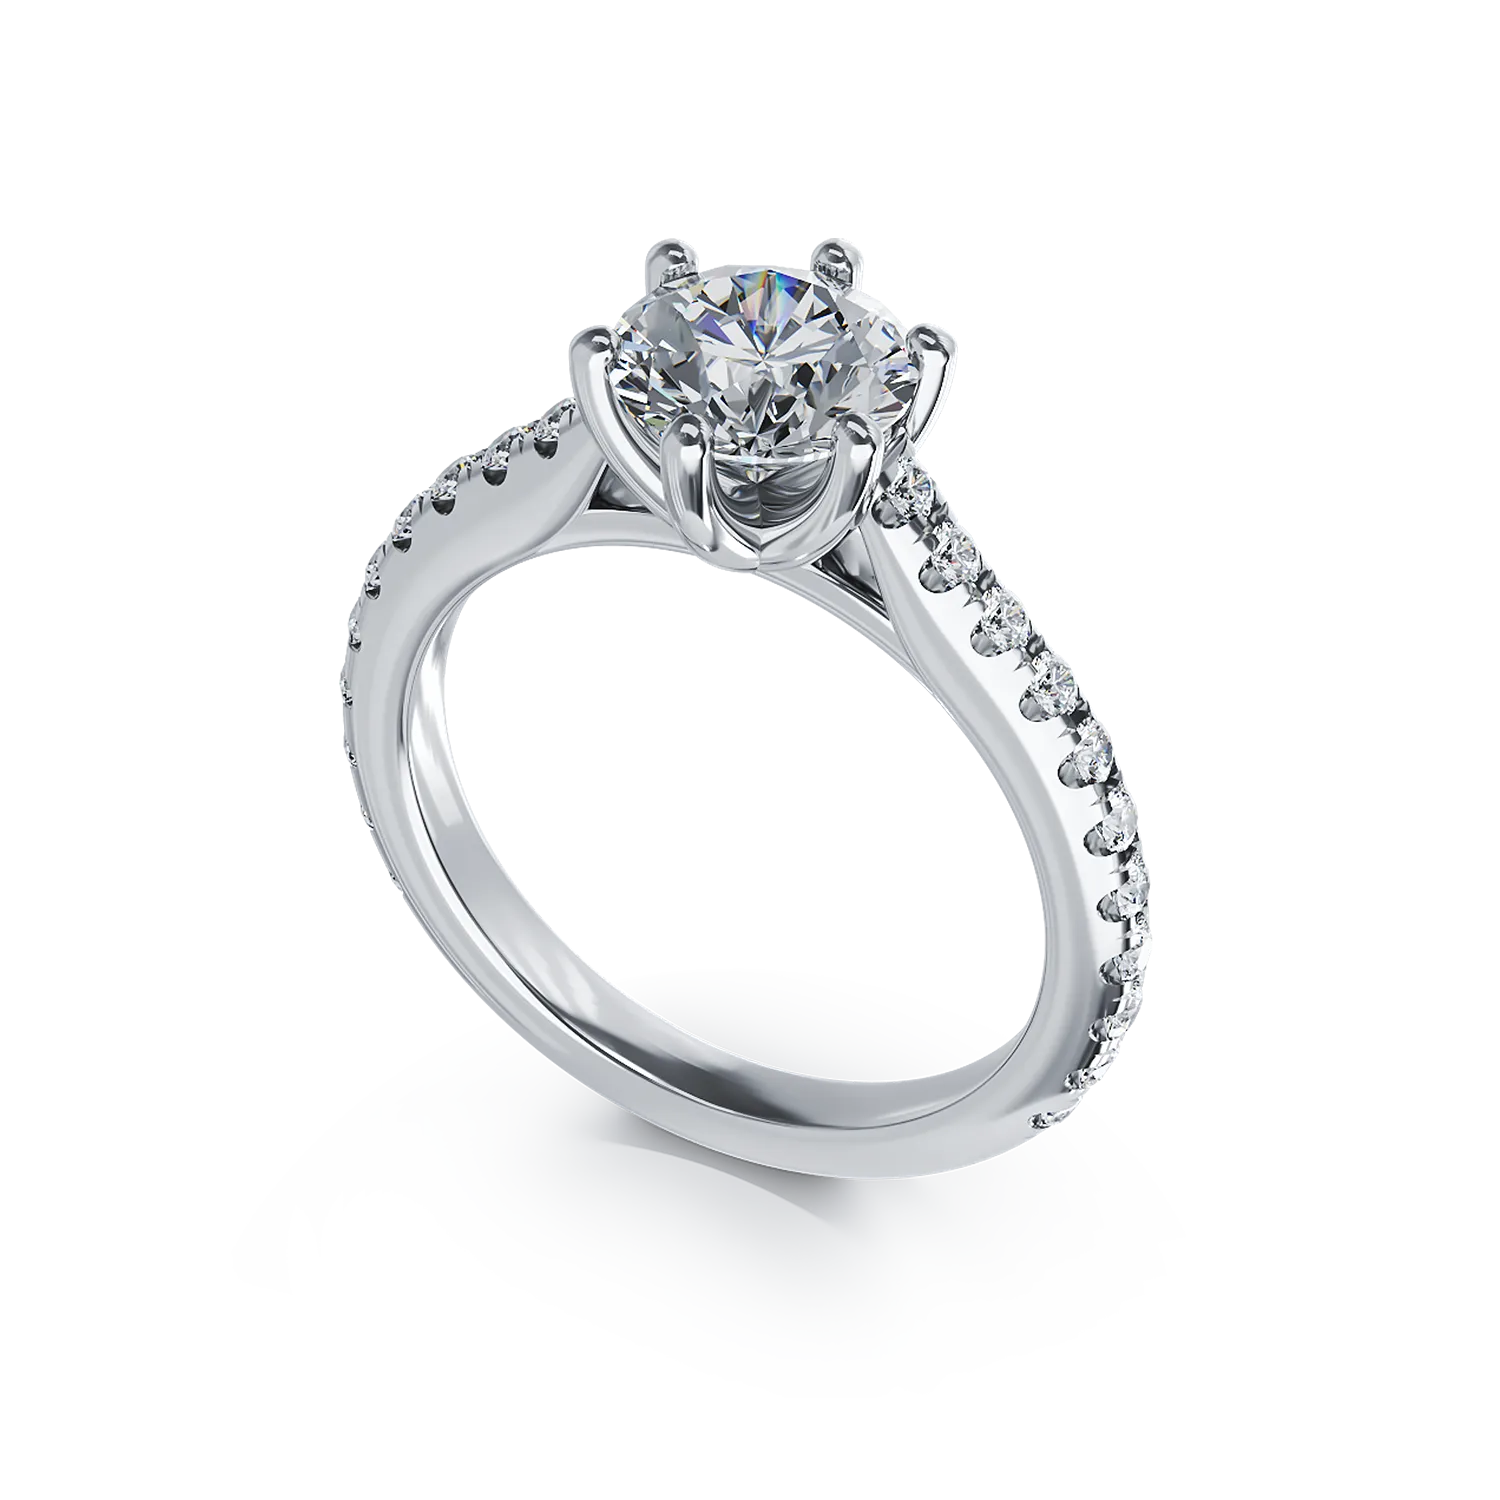 Годежен пръстен от бяло злато 18K с диамант 1.31гкт u диаманти 0.307гкт